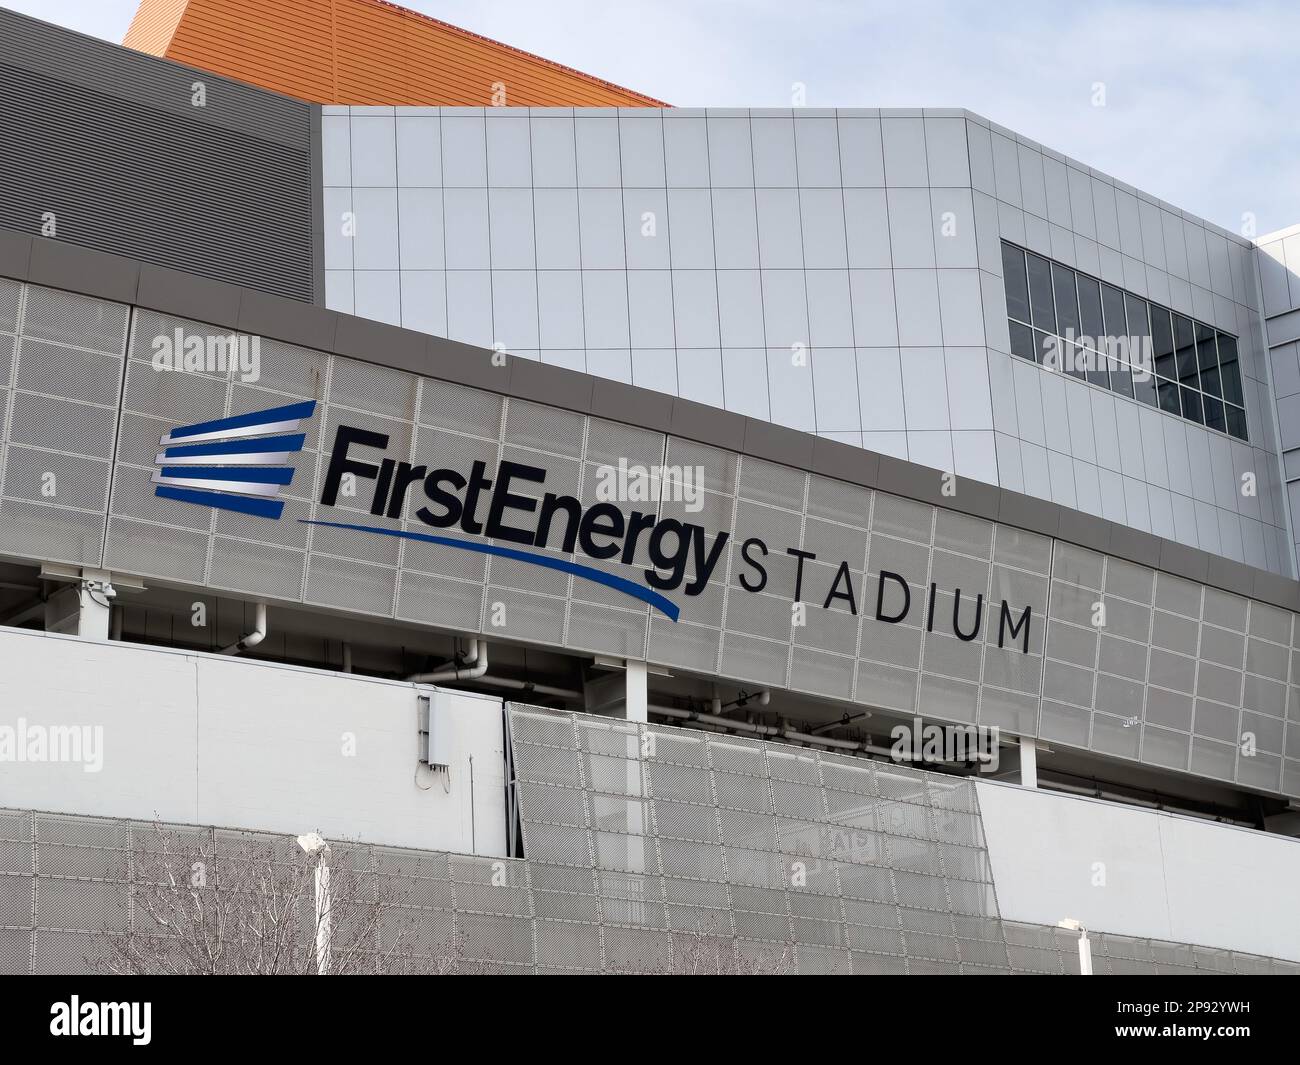 Le stade FirstEnergy accueille les Cleveland Browns de la NFL, ainsi que d'autres événements sportifs et de divertissement. Banque D'Images